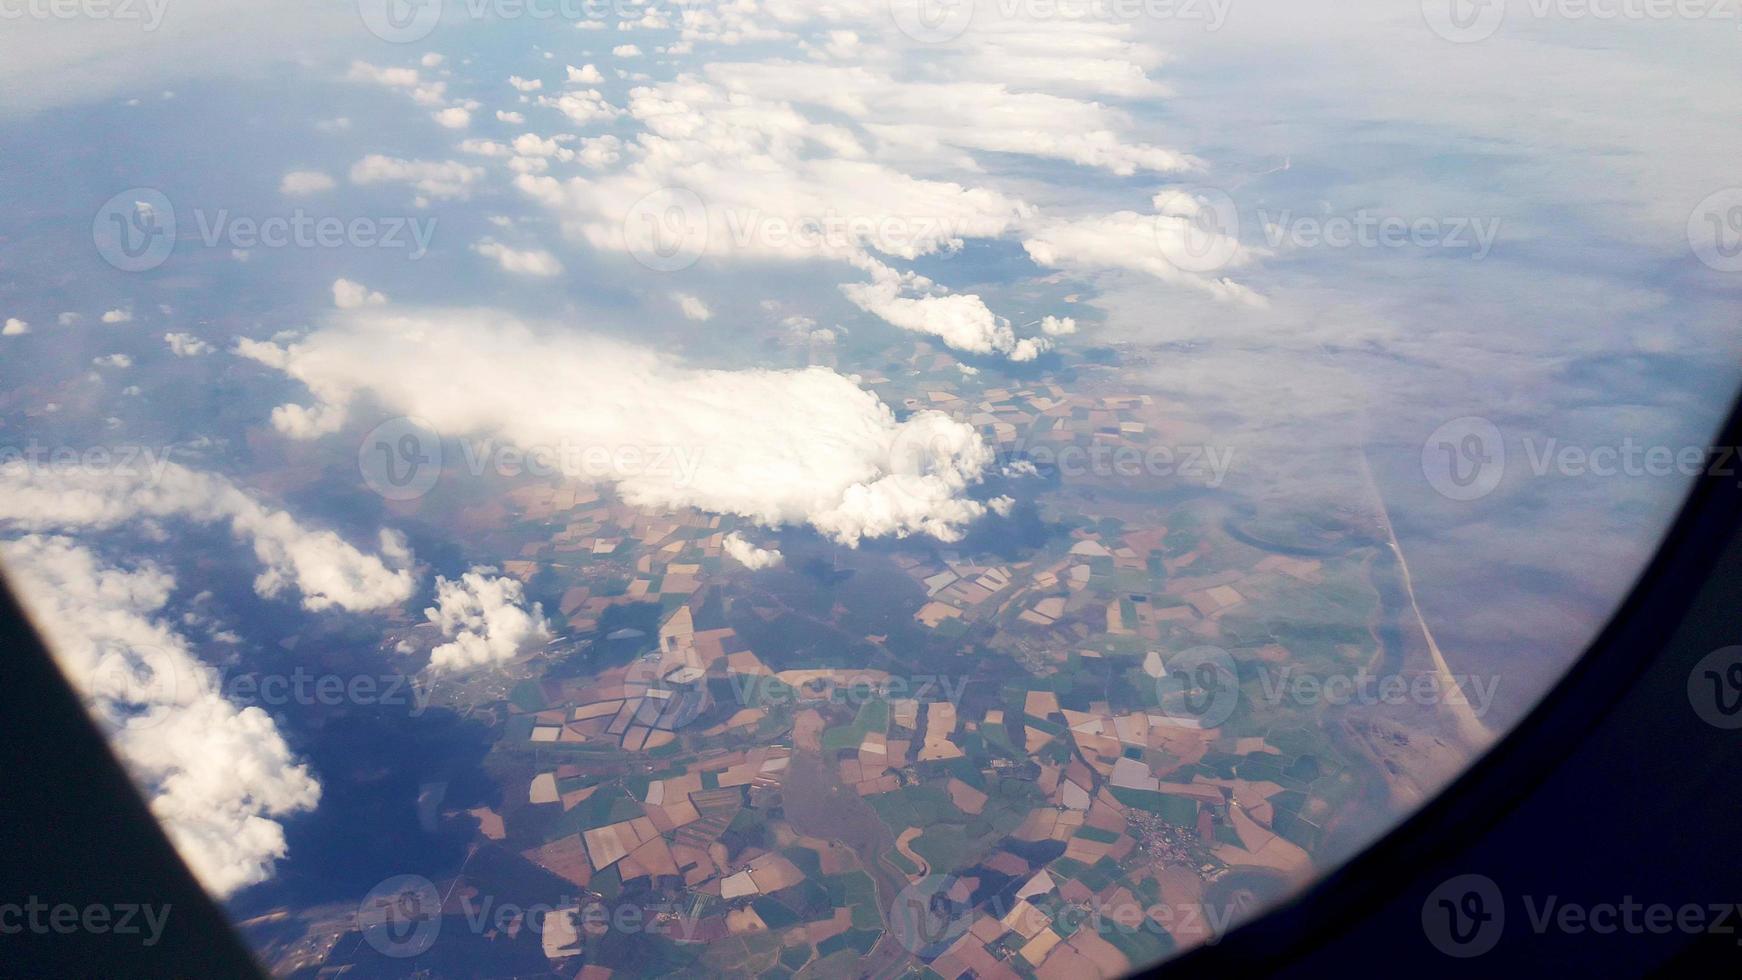 Imágenes aéreas desde la ventana de un avión por encima de nubes muy bajas. foto